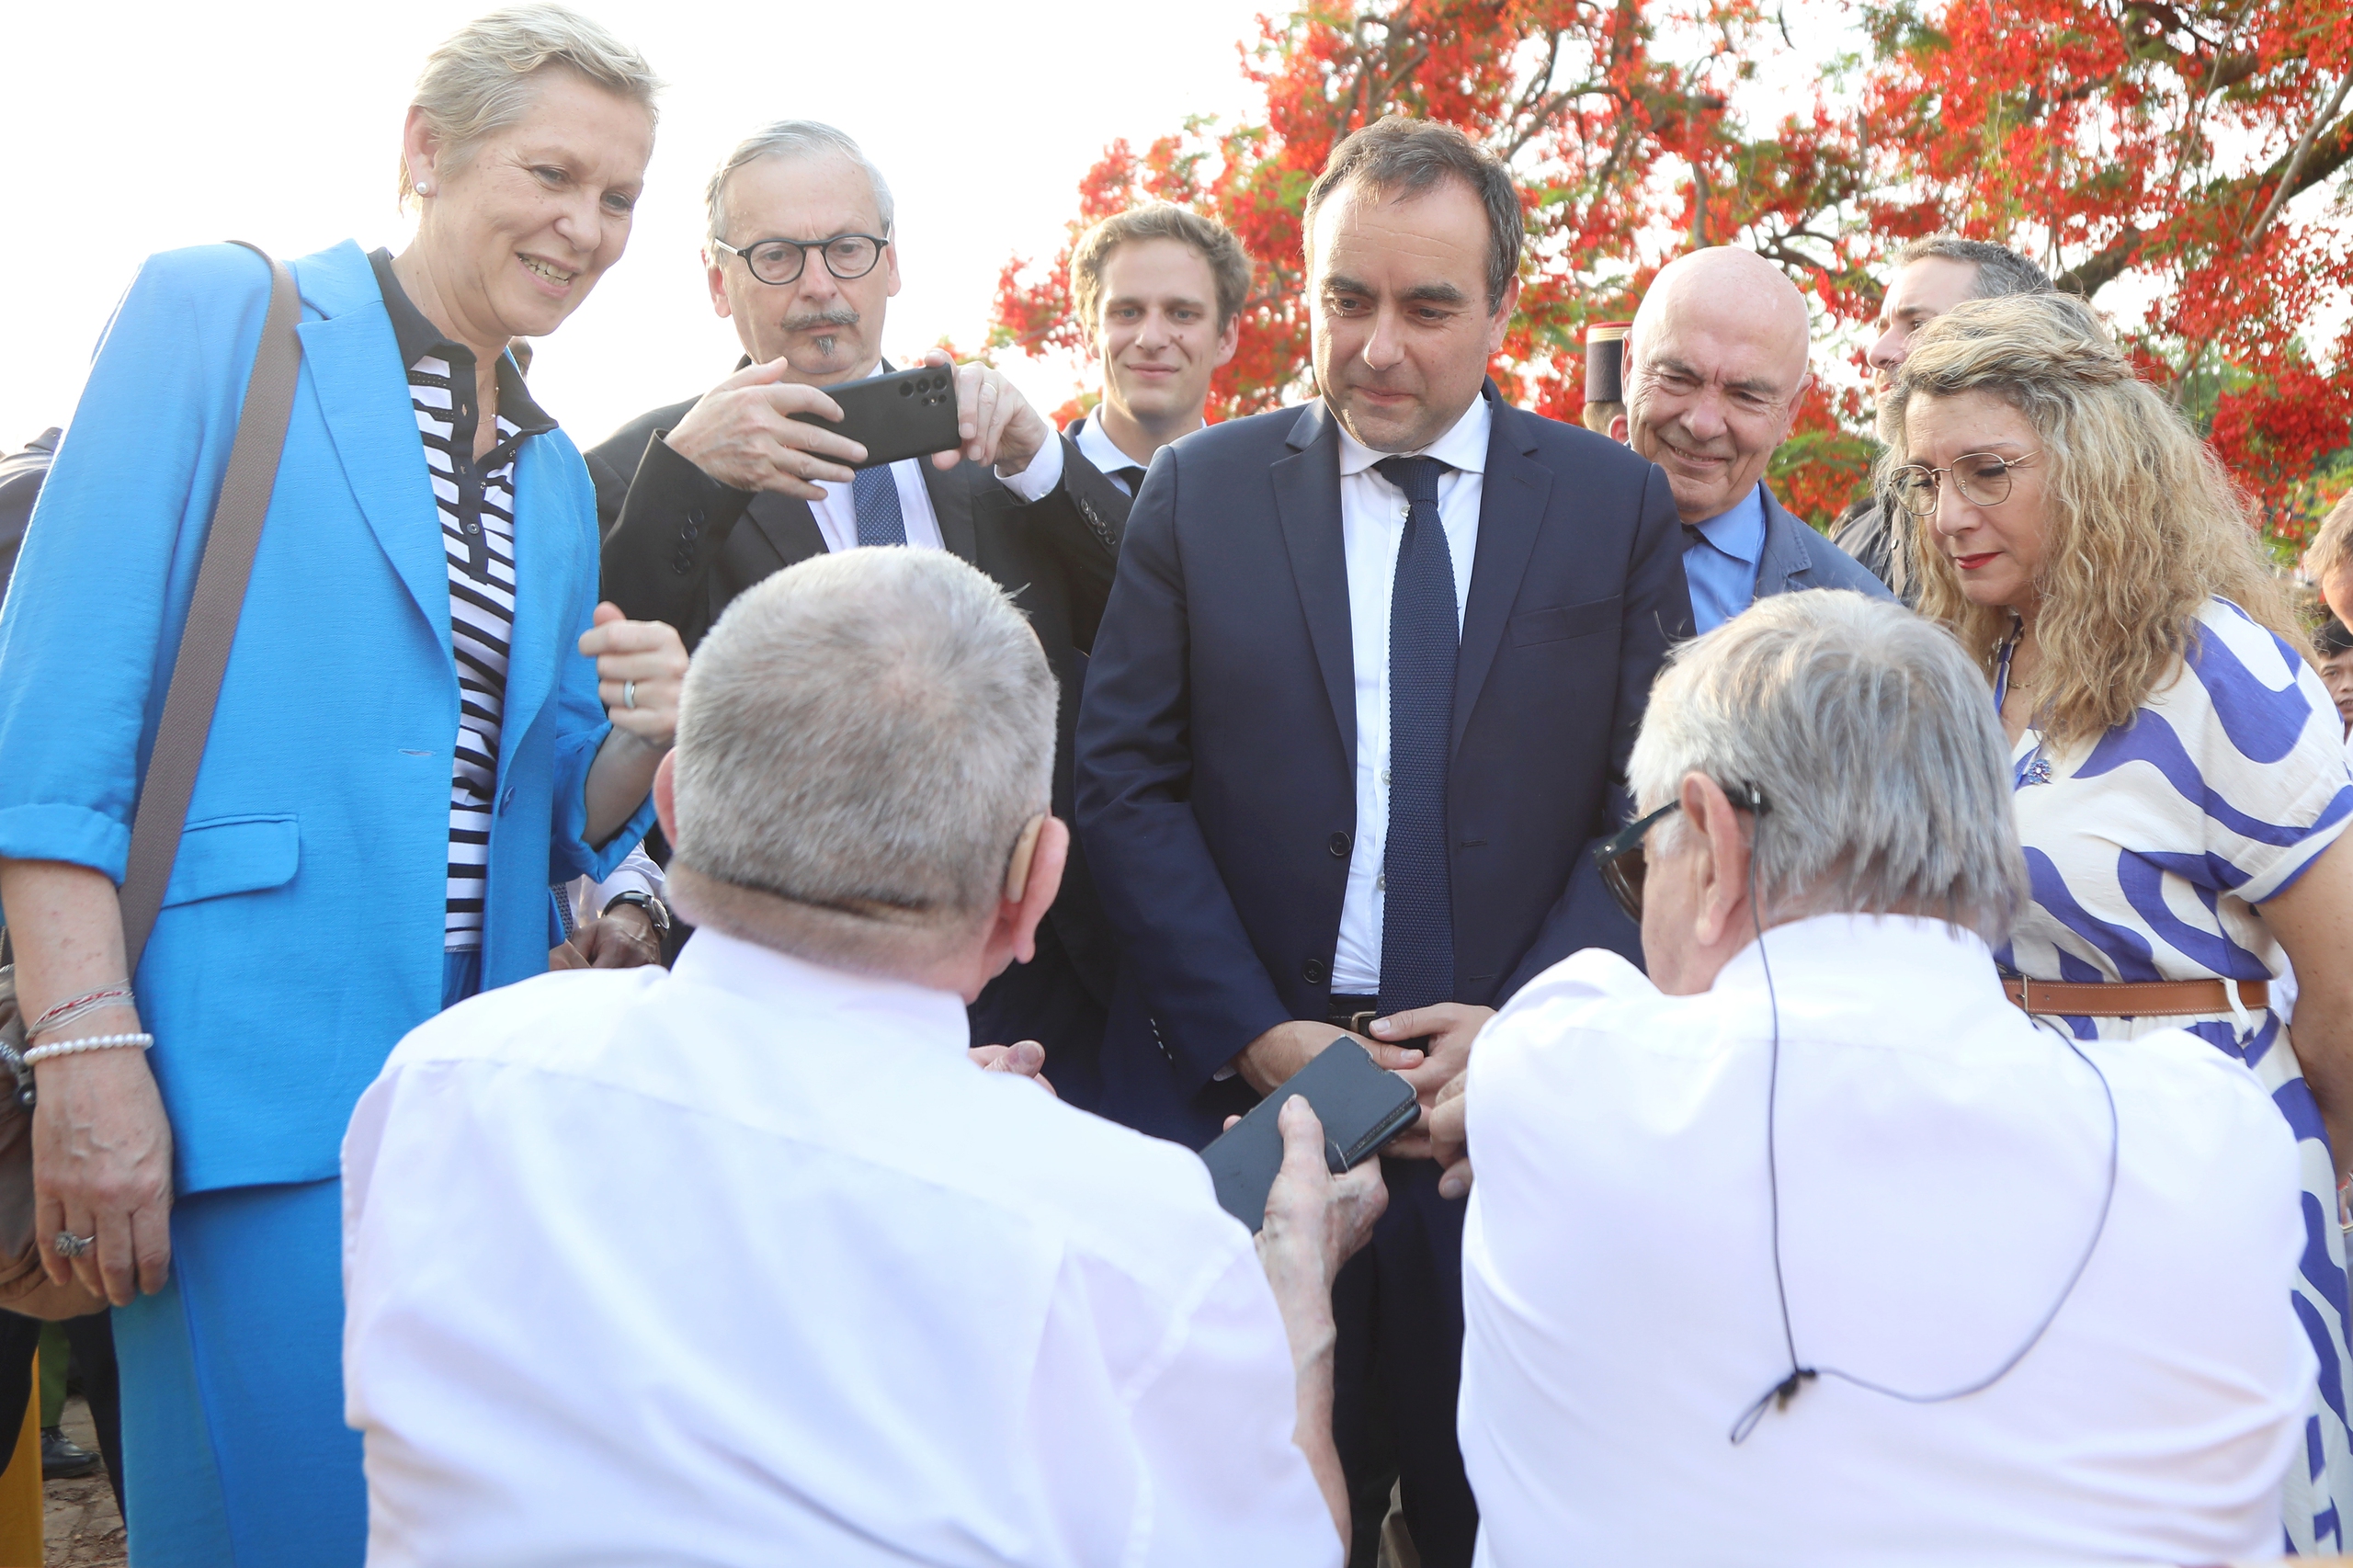 Bộ trưởng Sébastien Lecornu lắng nghe các cựu binh kể lại những ký ức